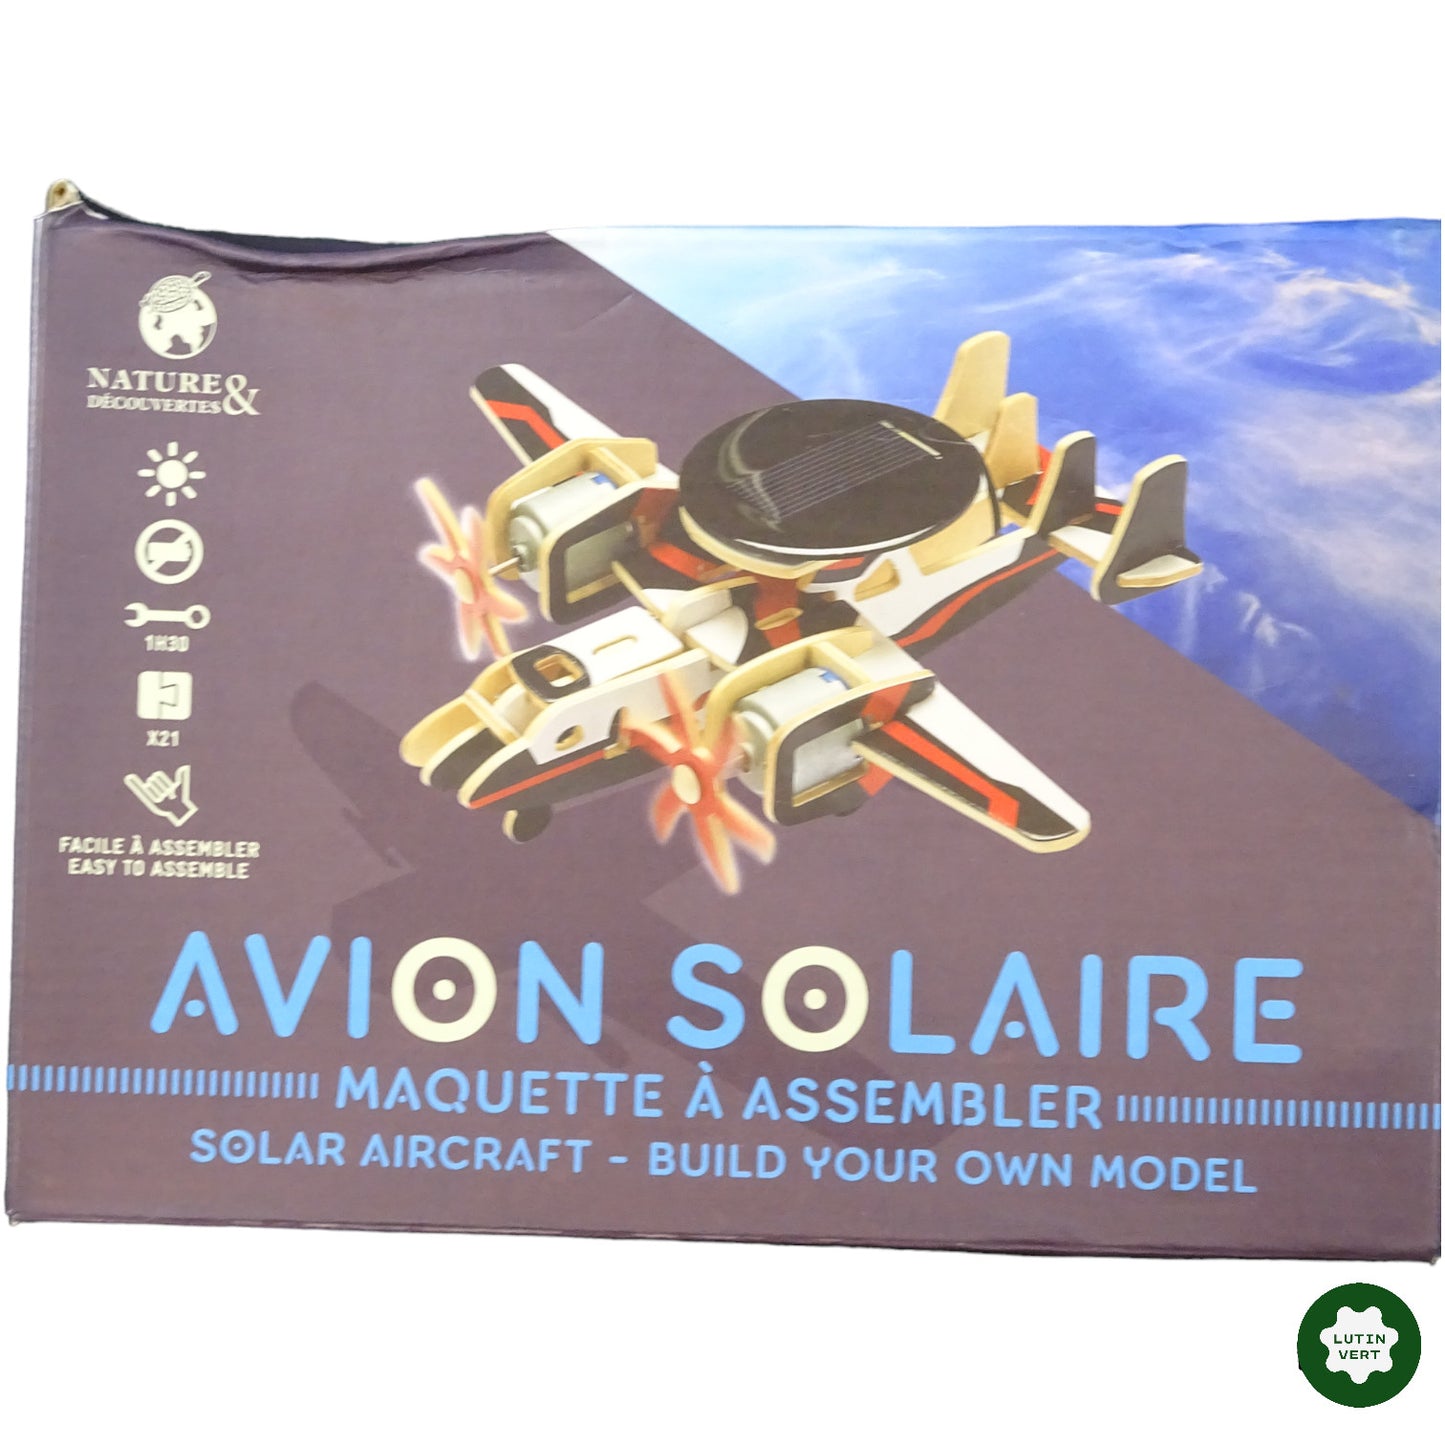 Avion solaire à assembler d'occasion NATURE DÉCOUVERTES - Dès 6 ans | Lutin Vert